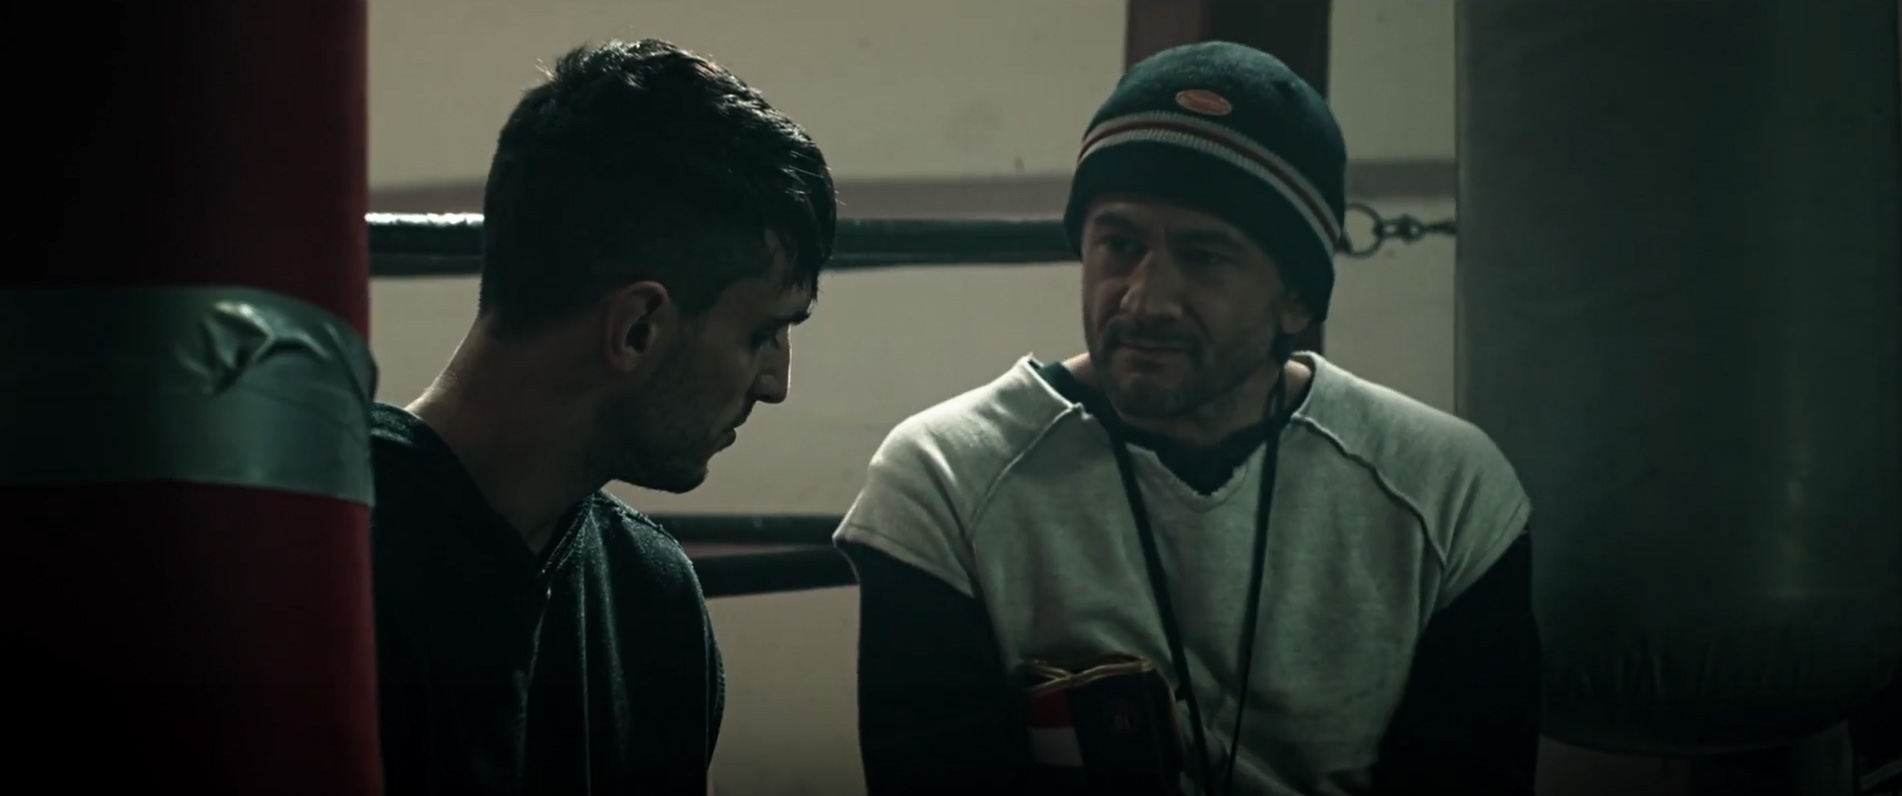 Ghiaccio, terza clip dal film di Fabrizio Moro e Alessio De Leonardis